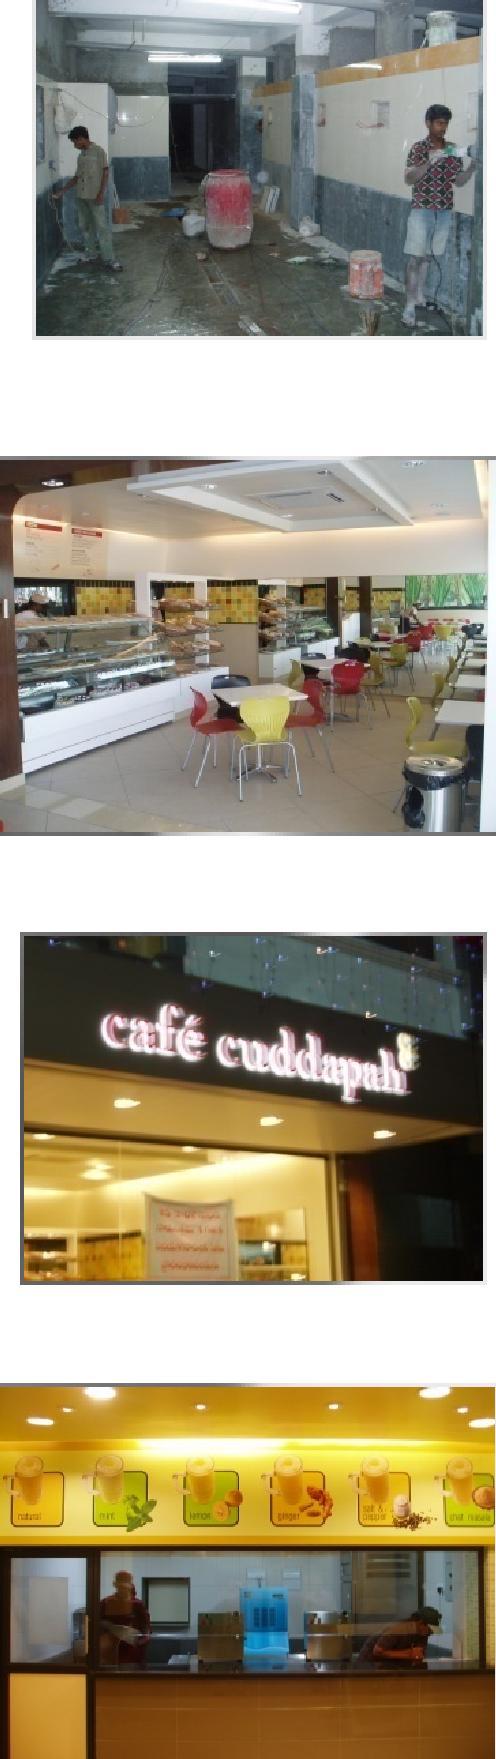 Applications Cafe Café Cuddapah a one of its kind café in Cuddapah.